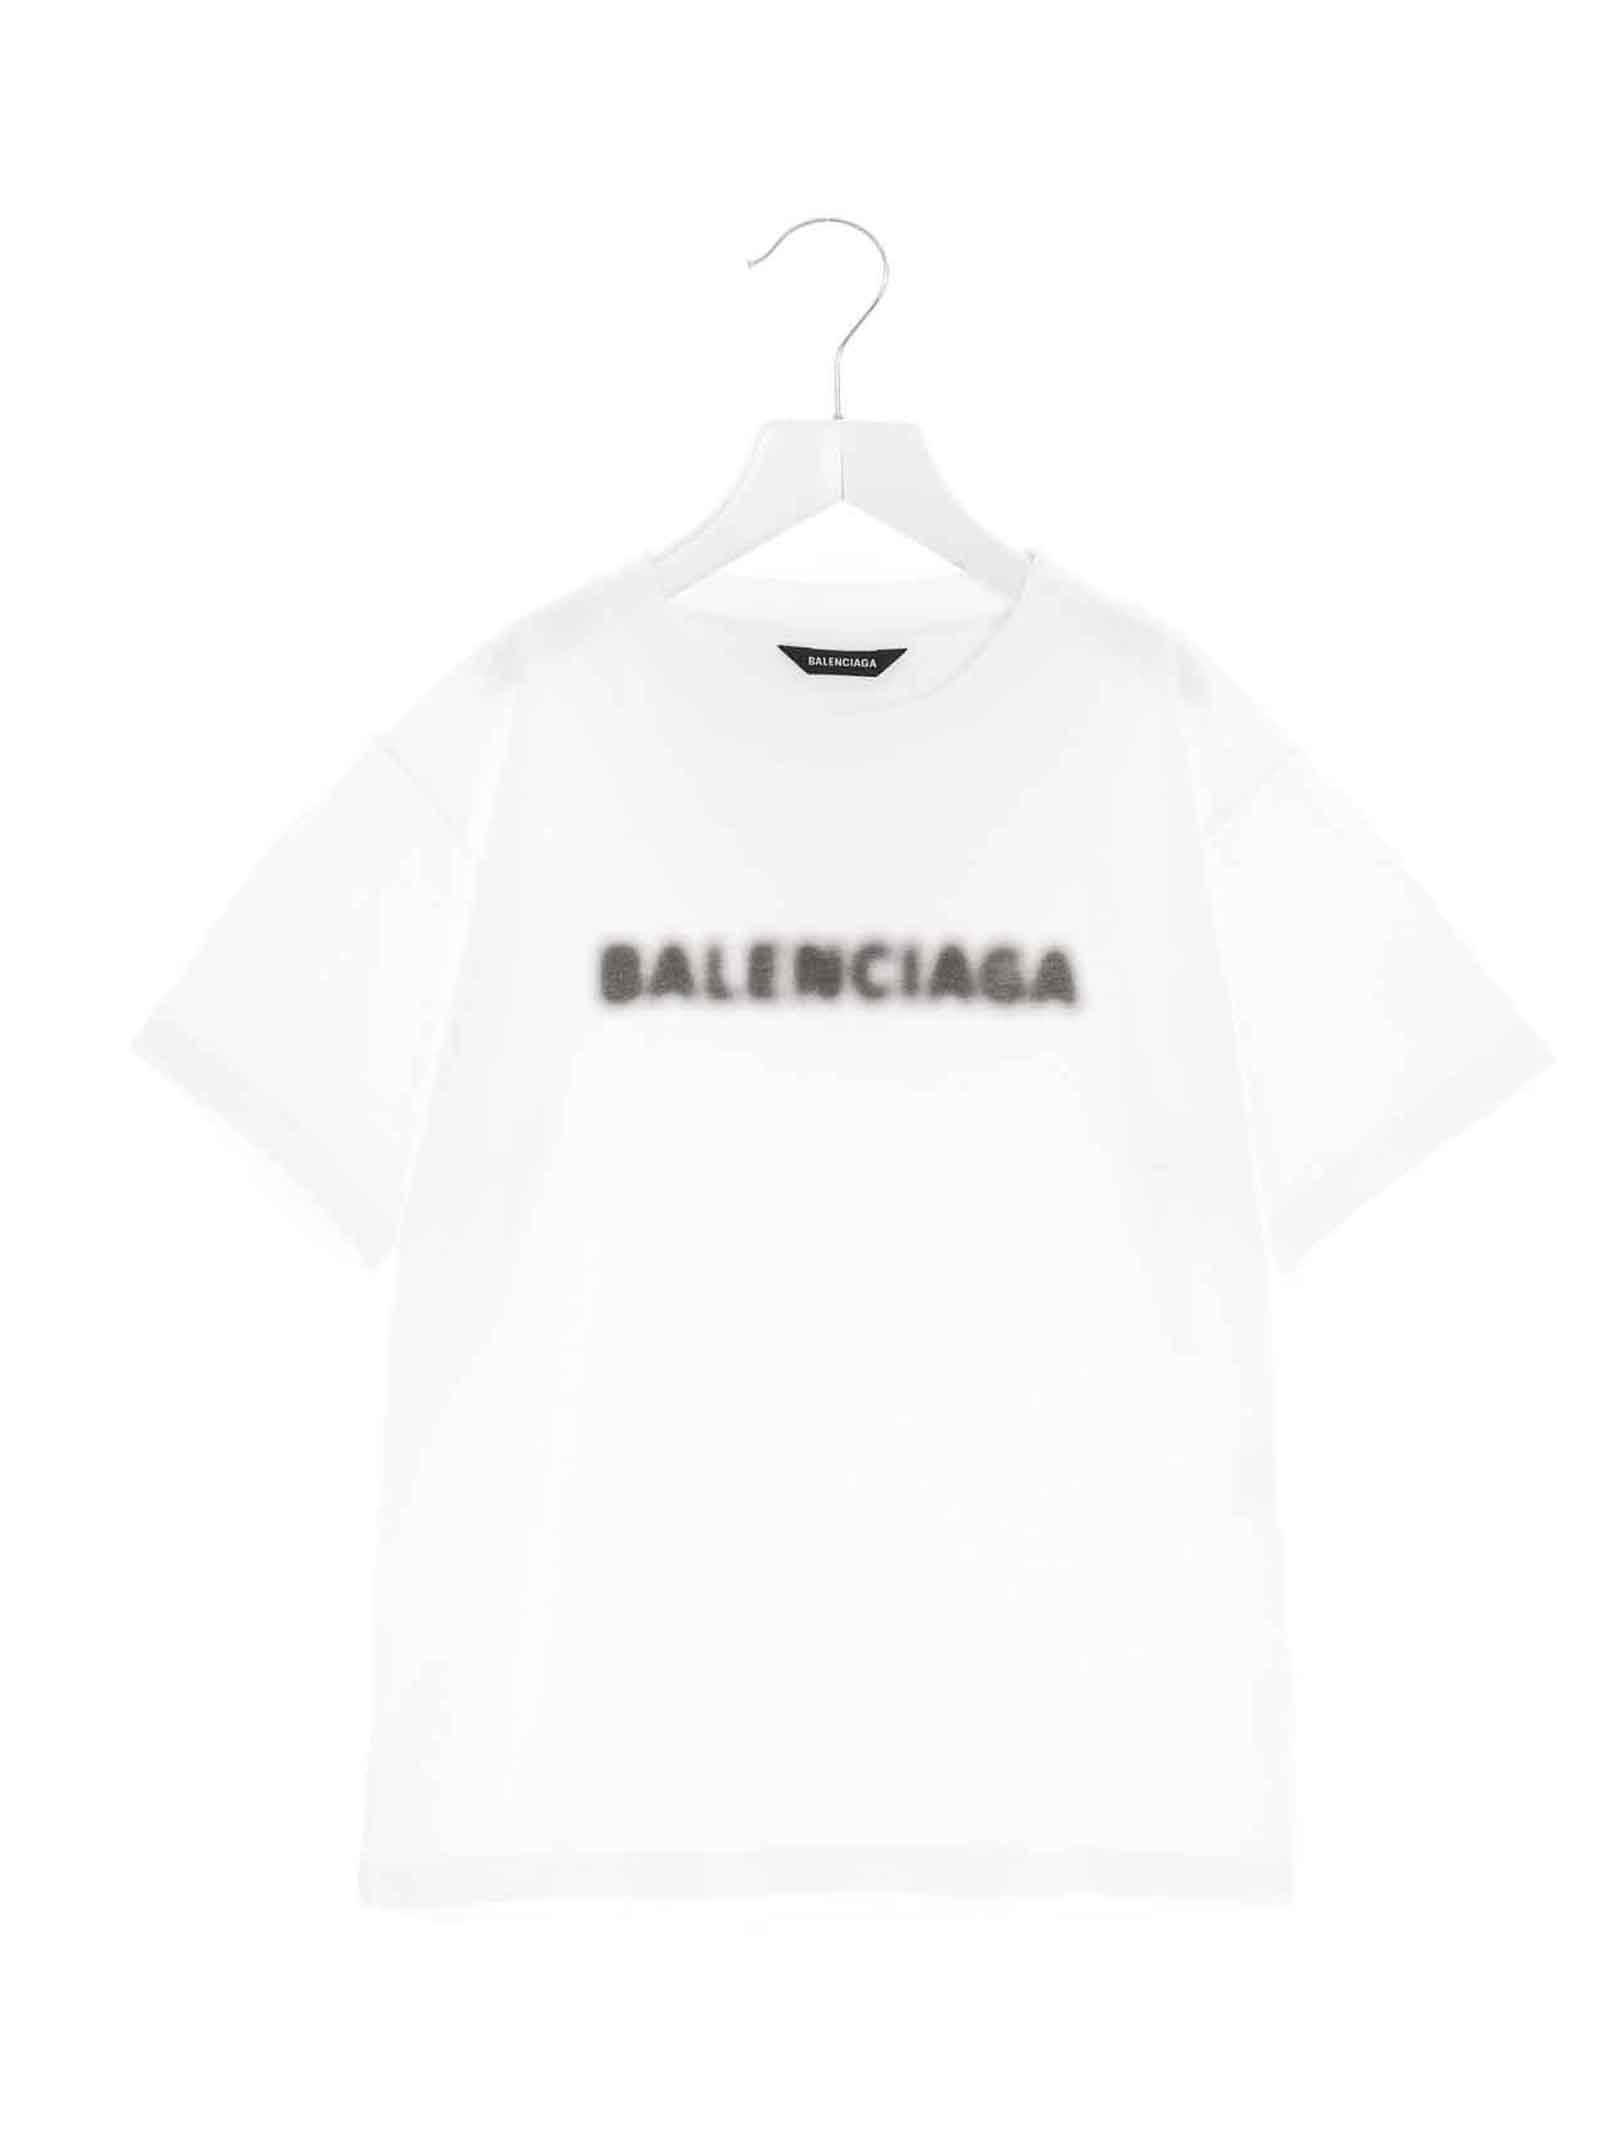 Balenciaga Blurry Logo T-shirt